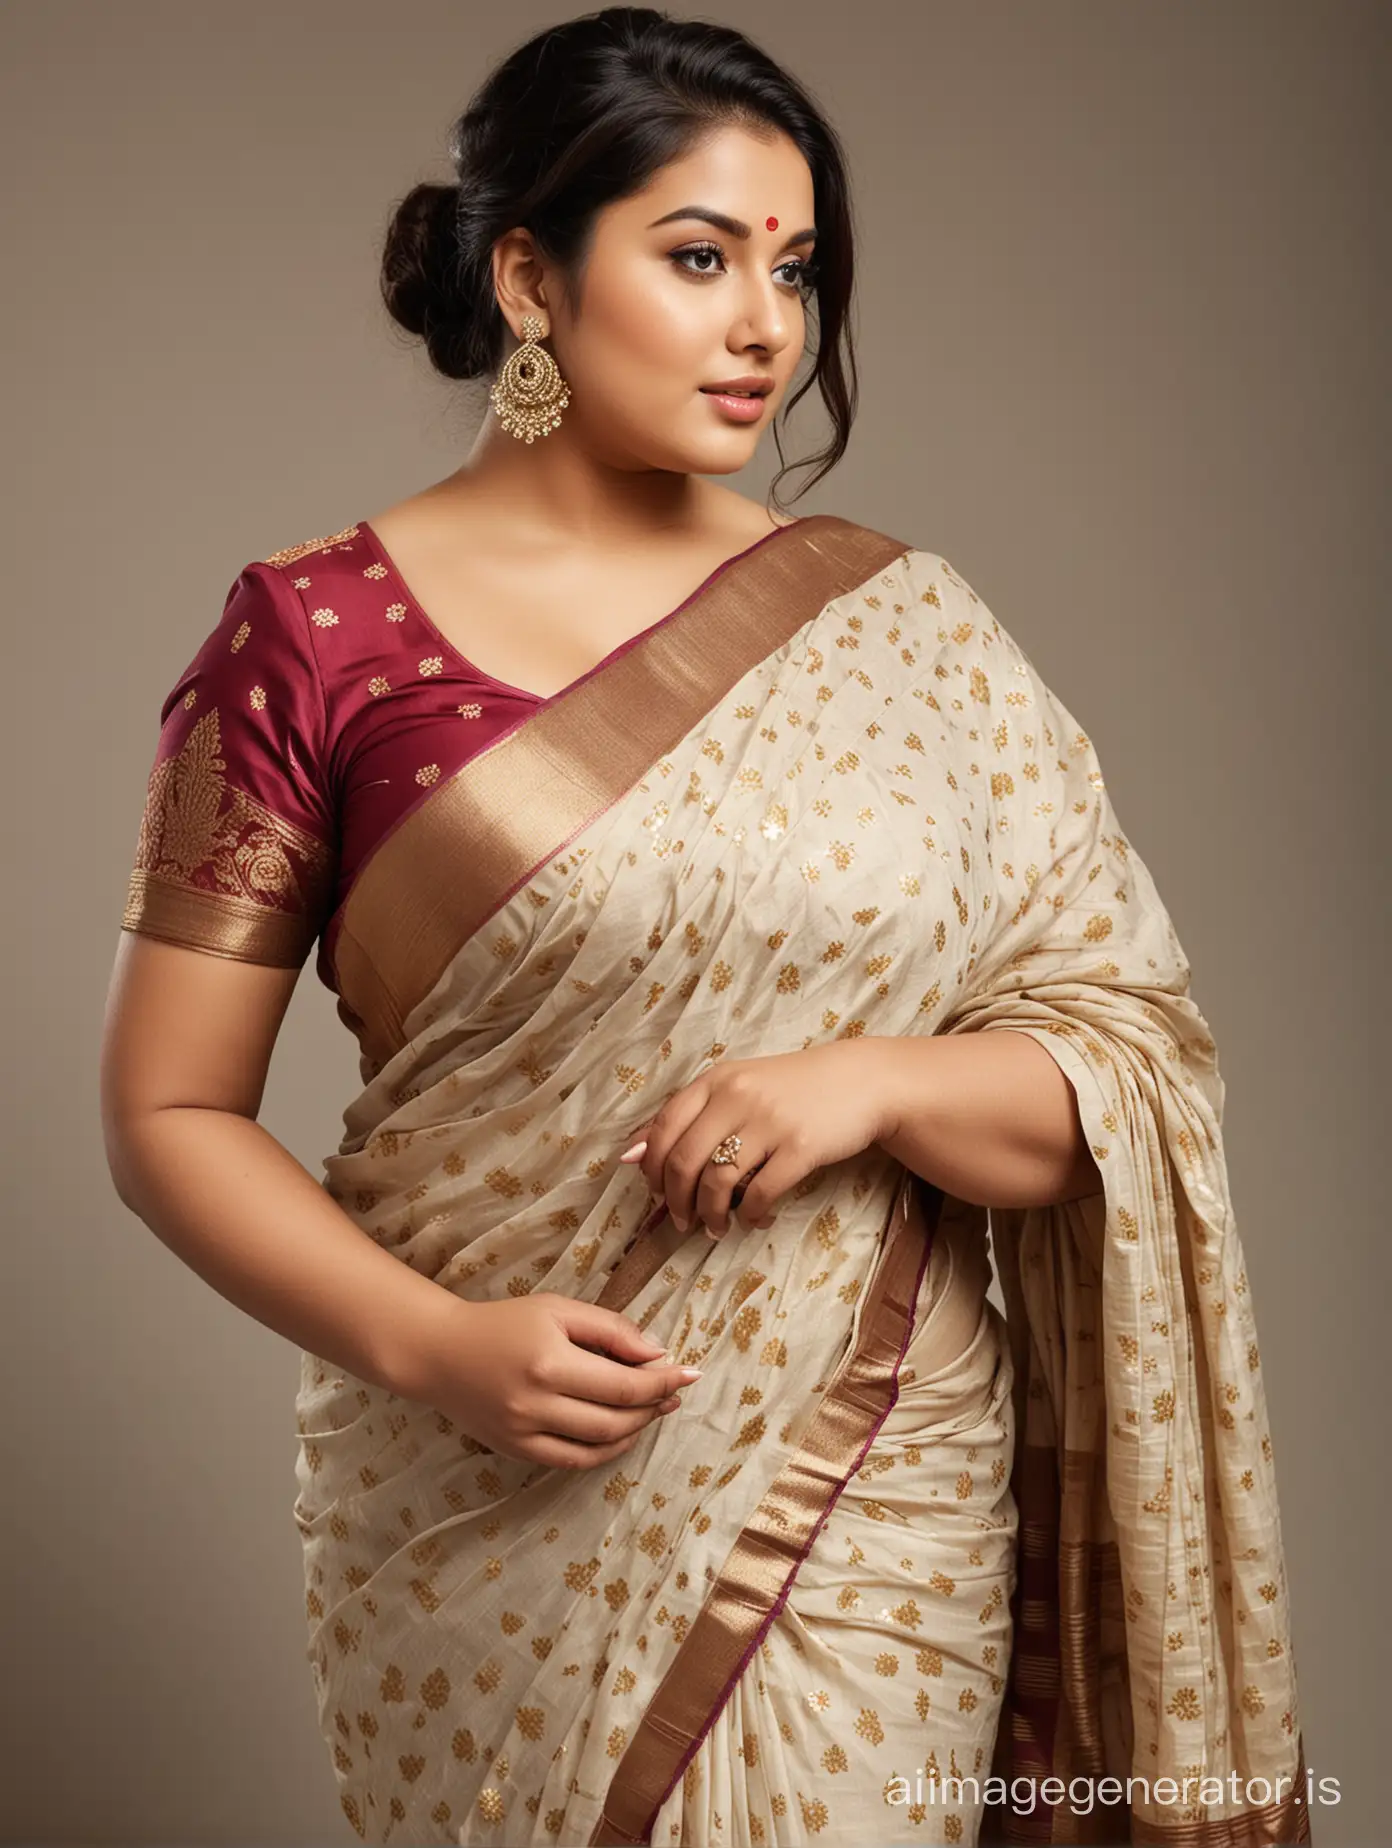 Beautiful plus size model in saree